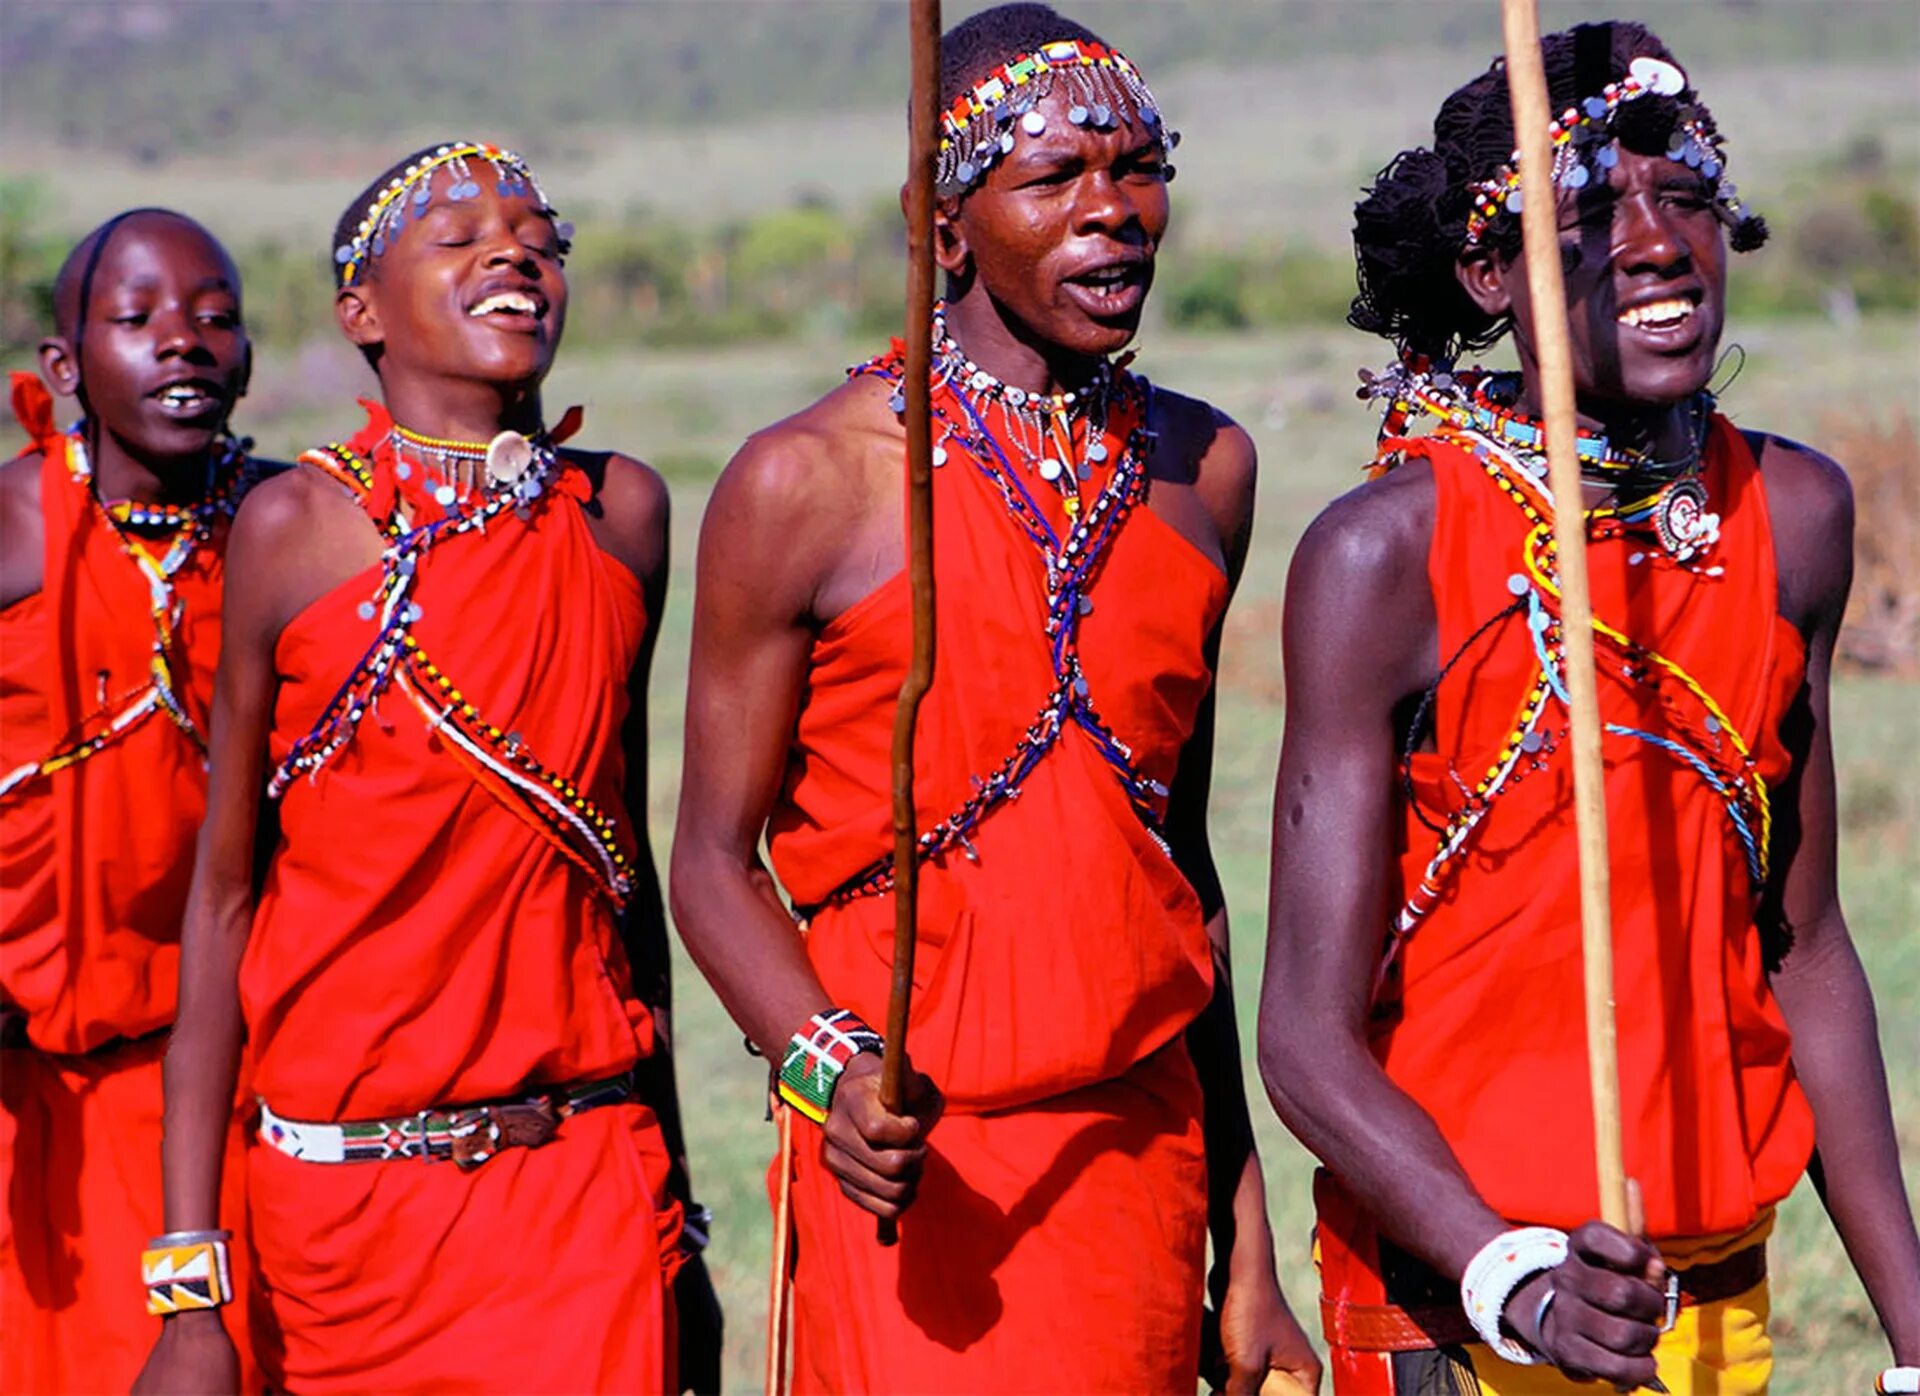 Племя знаменитая. Масаи народ Африки. Африканское племя Масаи. Кения племя Масаи. Масаи народы Кении.